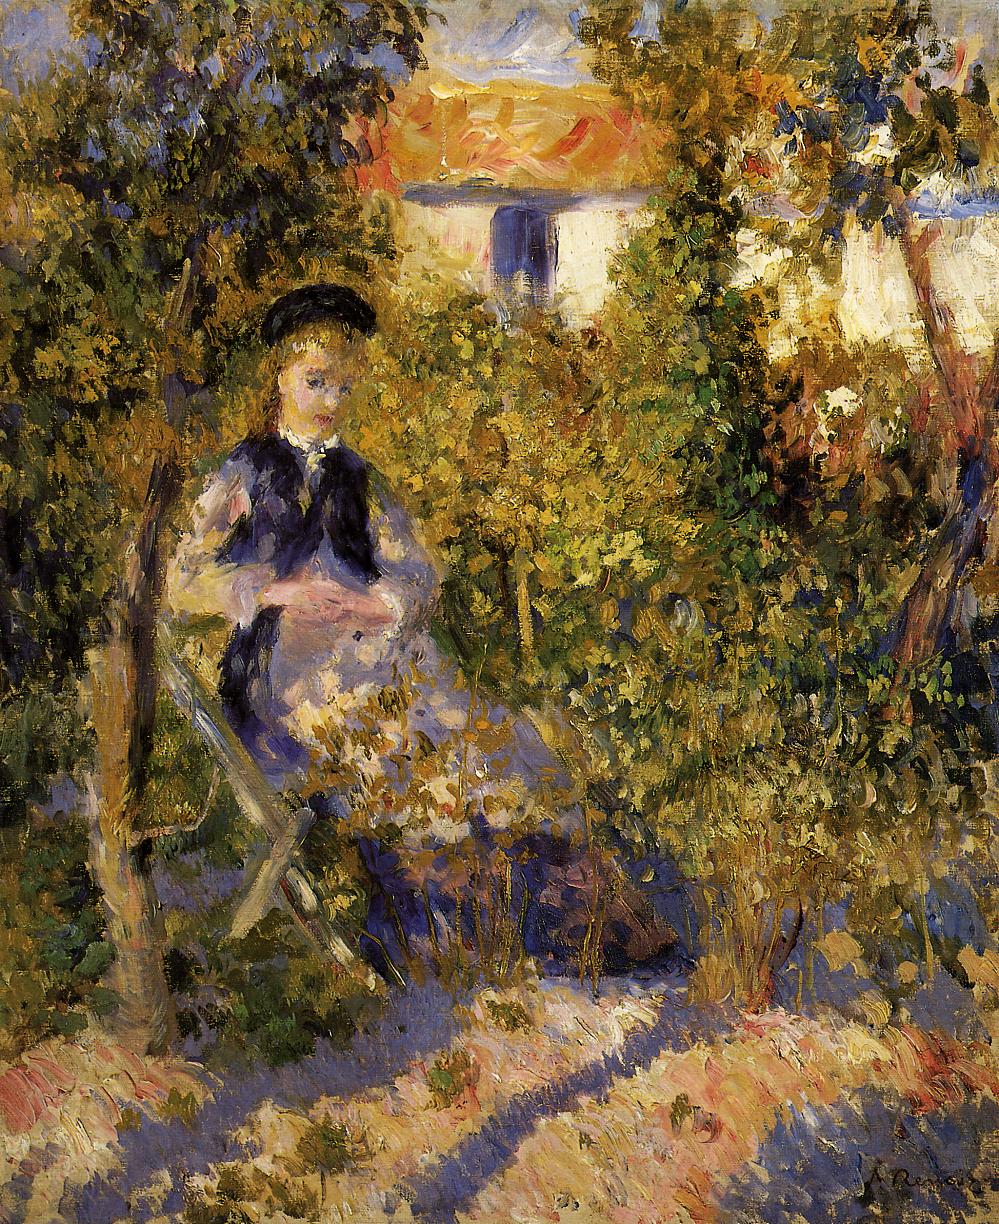 Nini in the garden 1876